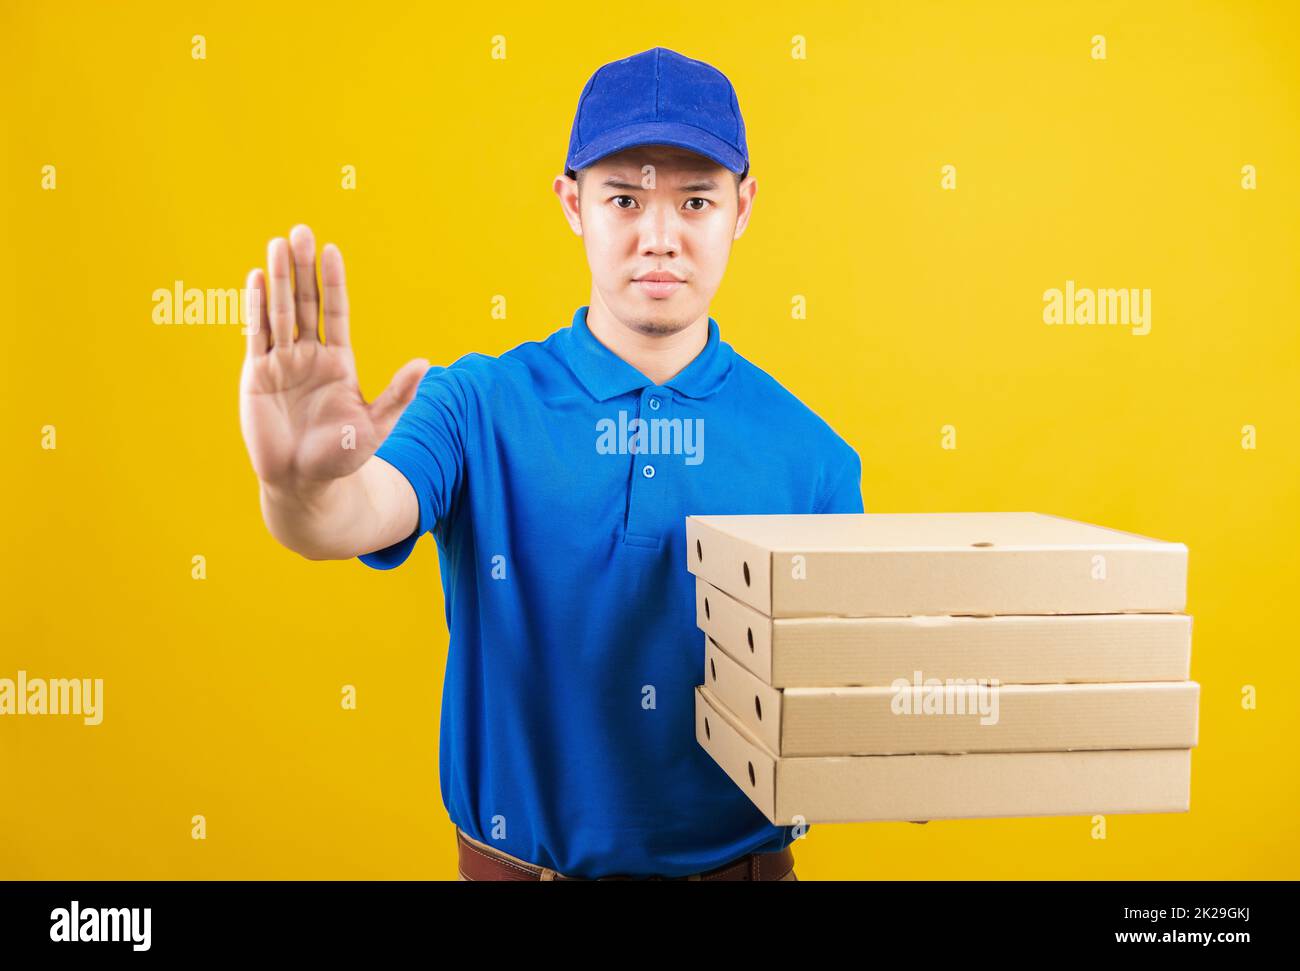 Lieferservice Mann mit blauem T-Shirt und Kappe Uniform halten Papierkiste italienische Pizzapackung und zeigen Hand-Stopp-Zeichen-Geste Stockfoto